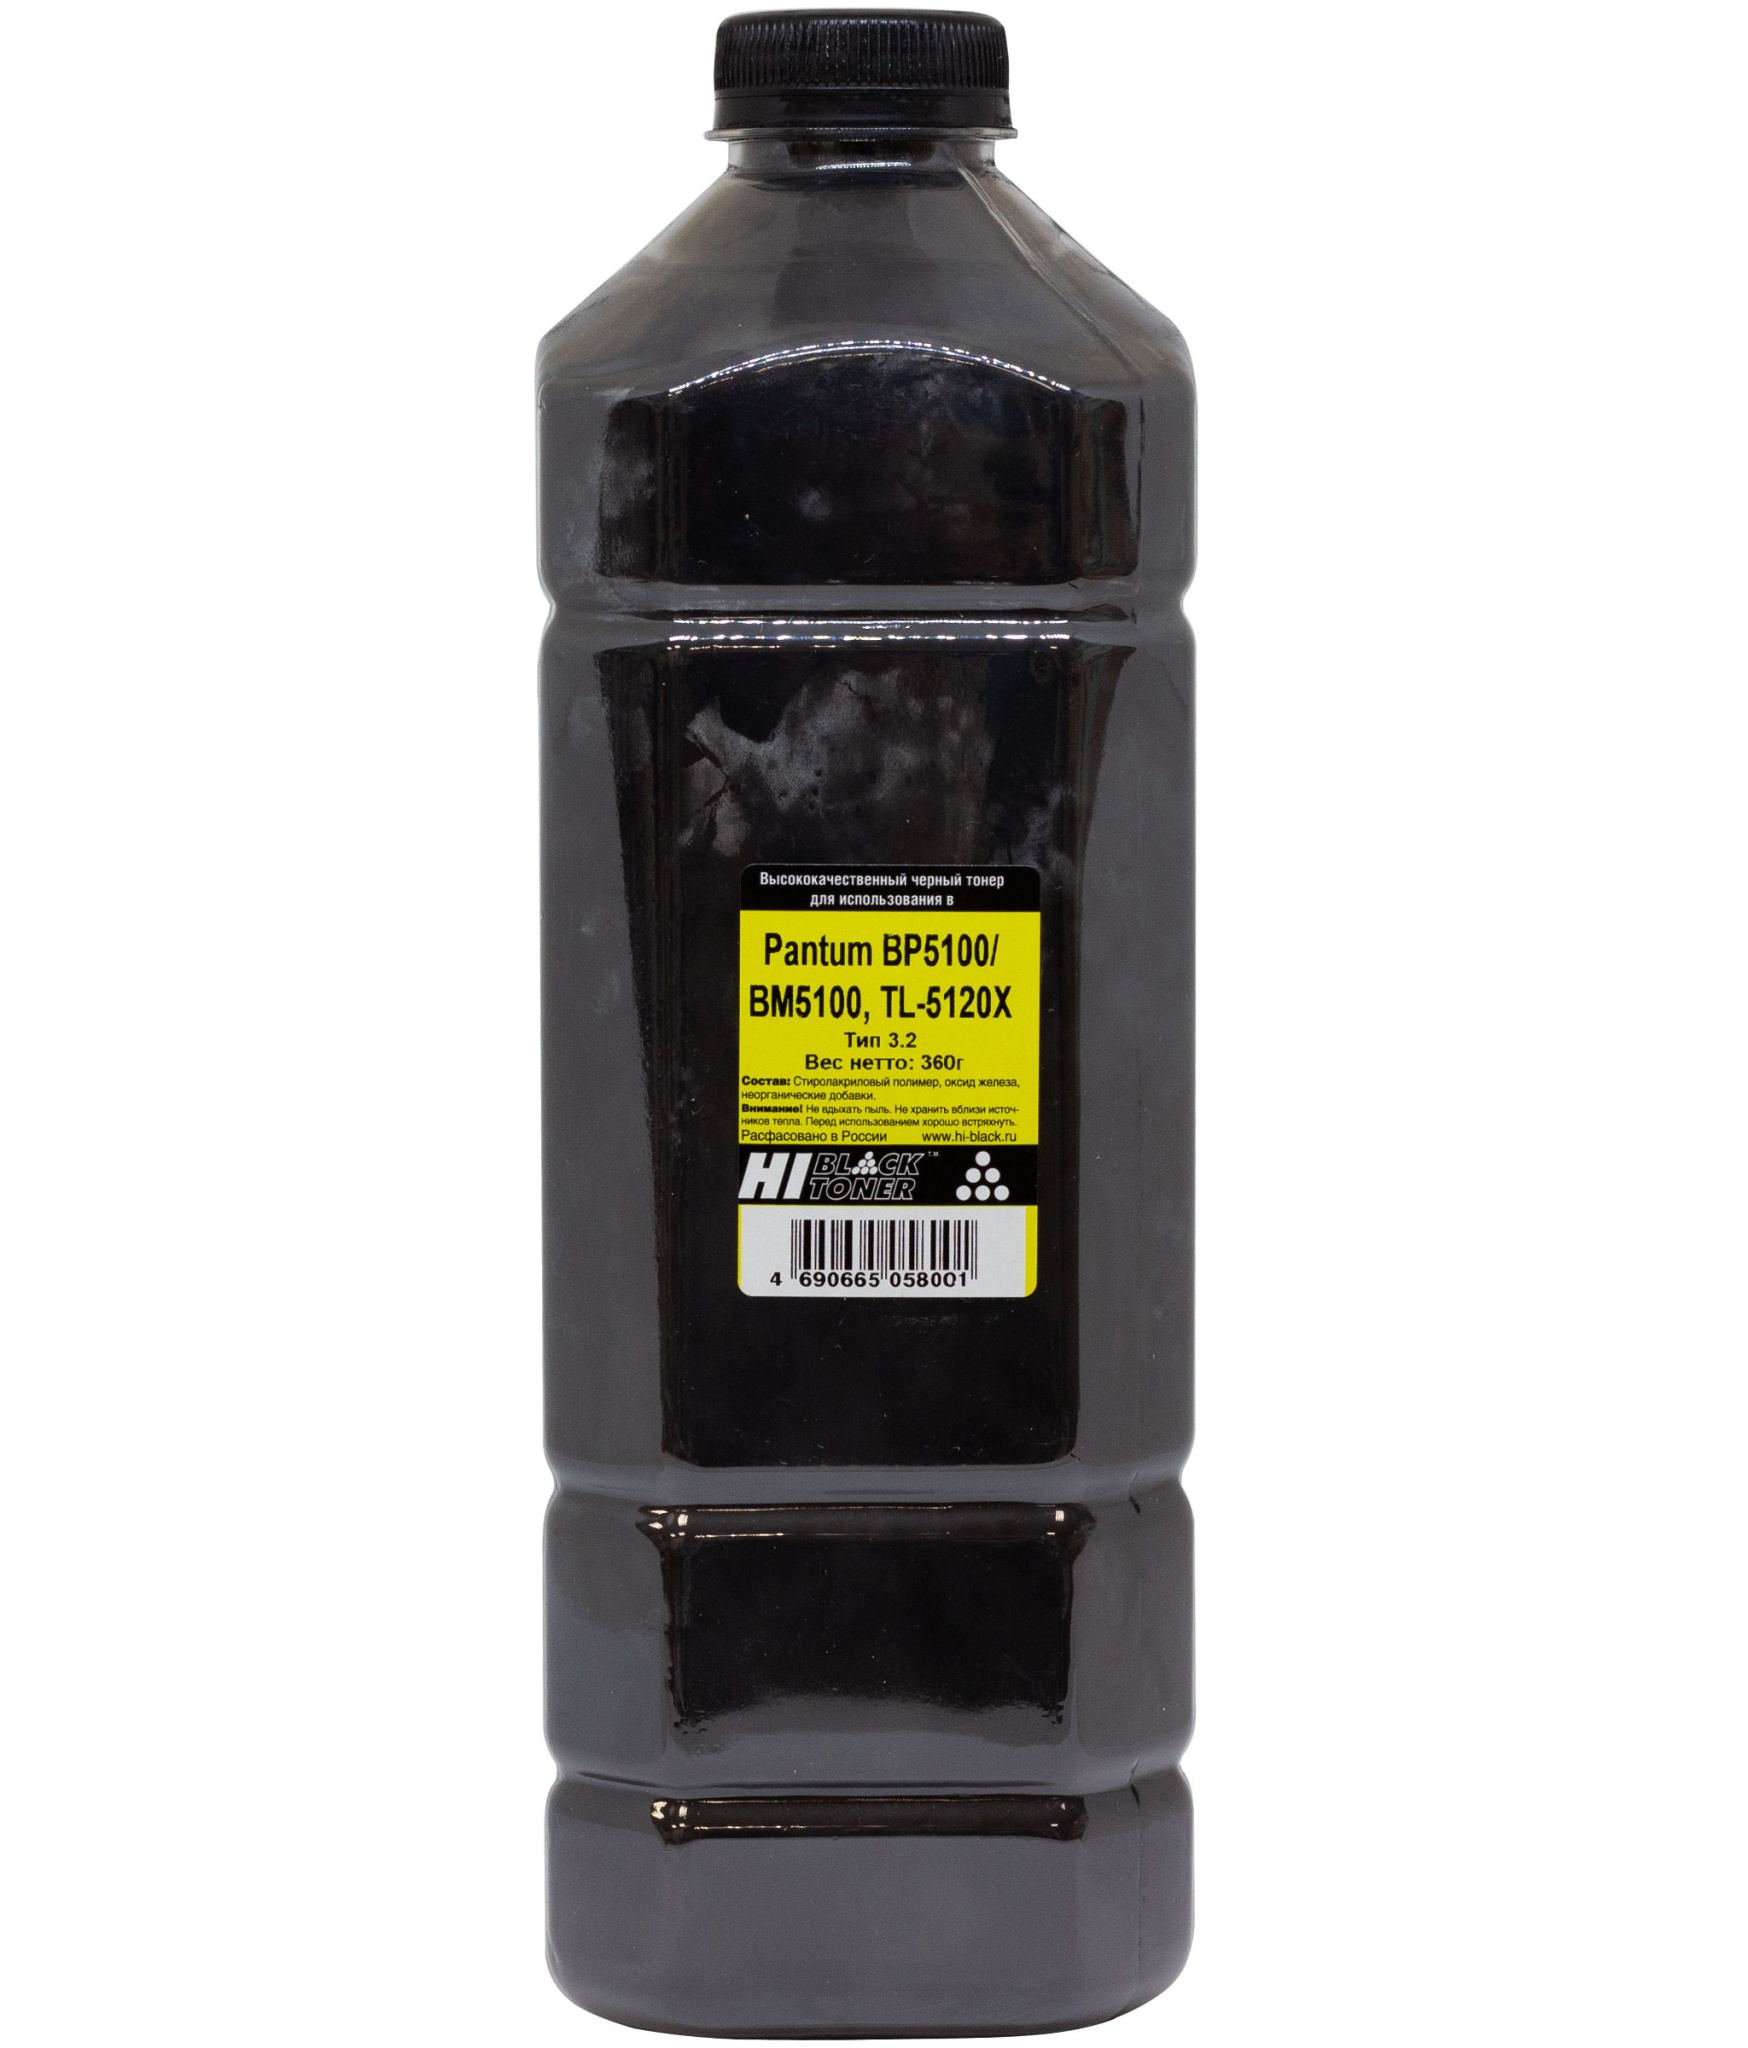 Tонер Hi-Black (TL-5120Х) для Pantum BP5100/ BM5100, Тип 3.2, чёрный (360 гр.)